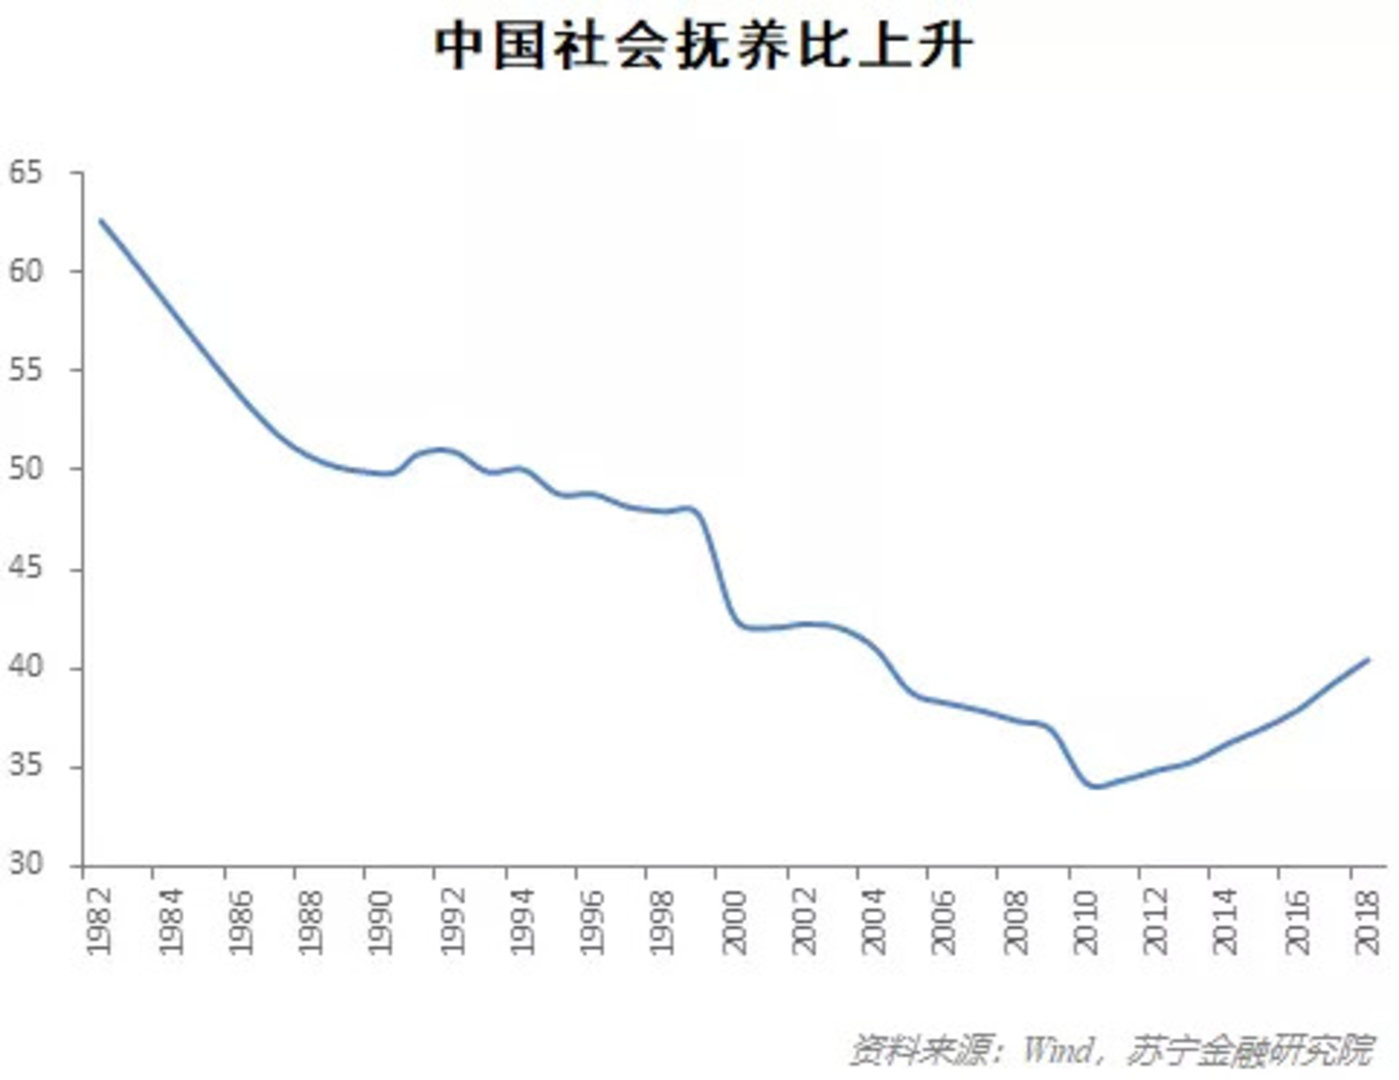 后人口红利时期,中国靠什么支撑经济增长?